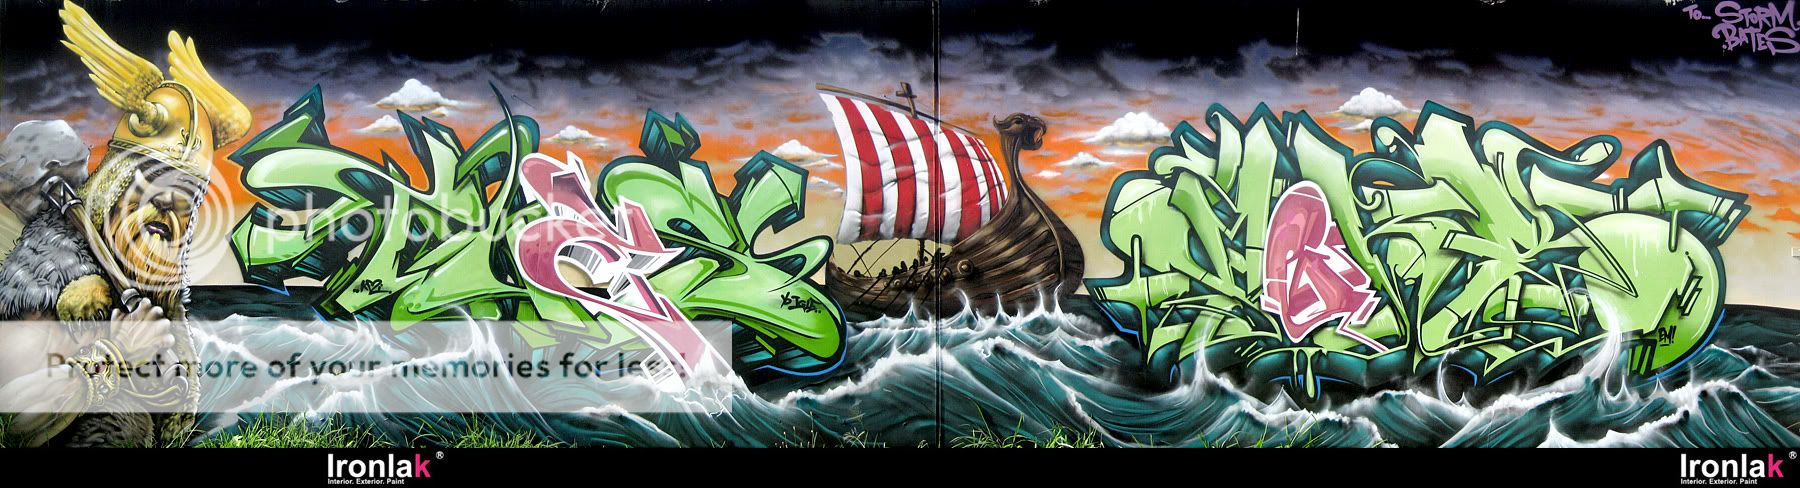 Meks-Tues-Viking-Graffiti-Ironlak-b